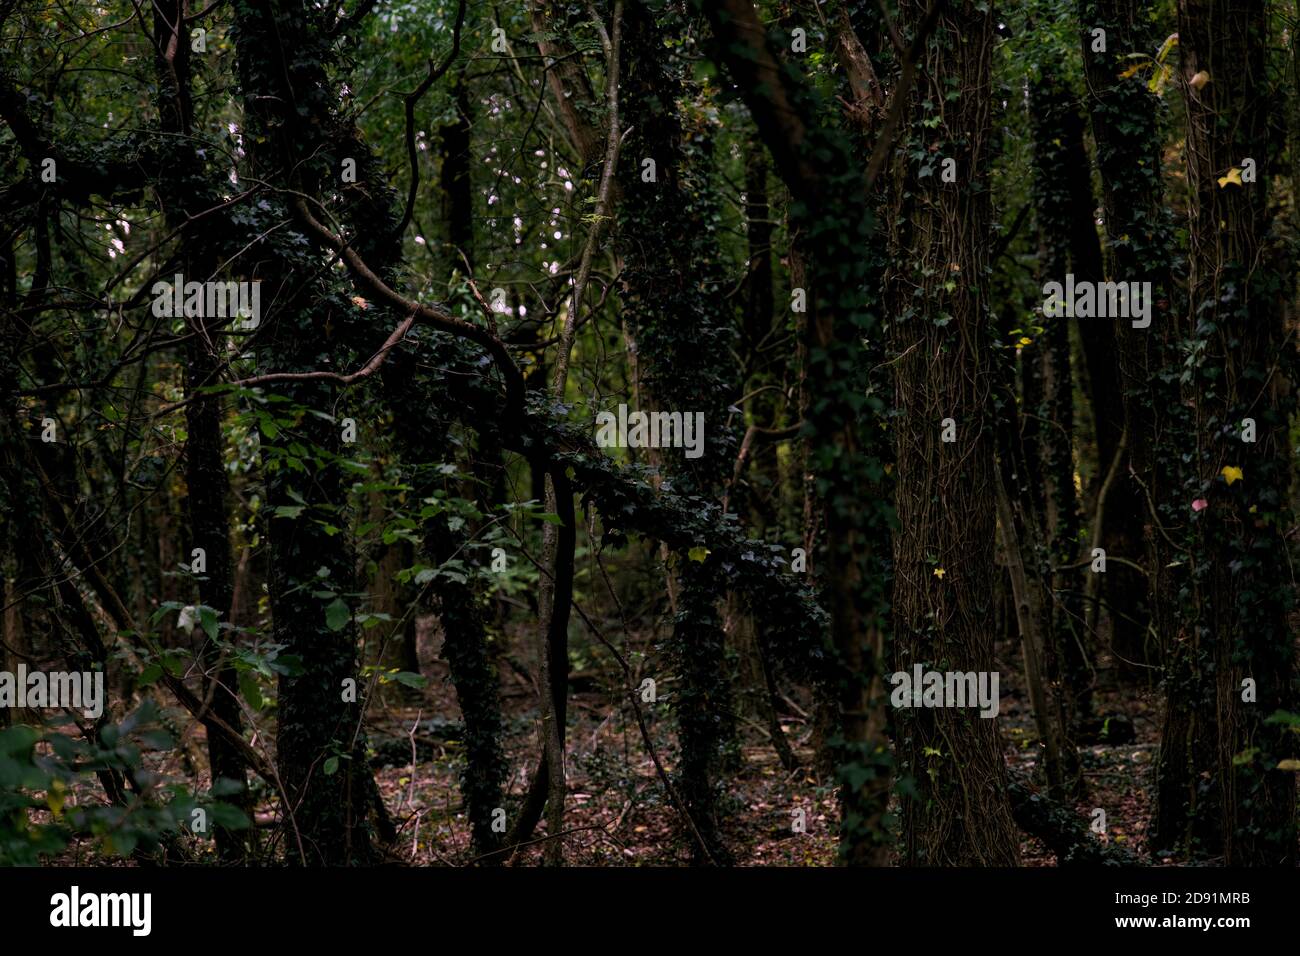 Gruseliger dunkler Wald mit hohen Bäumen und Reben. Horizontale Komposition, Vollformat Stockfoto